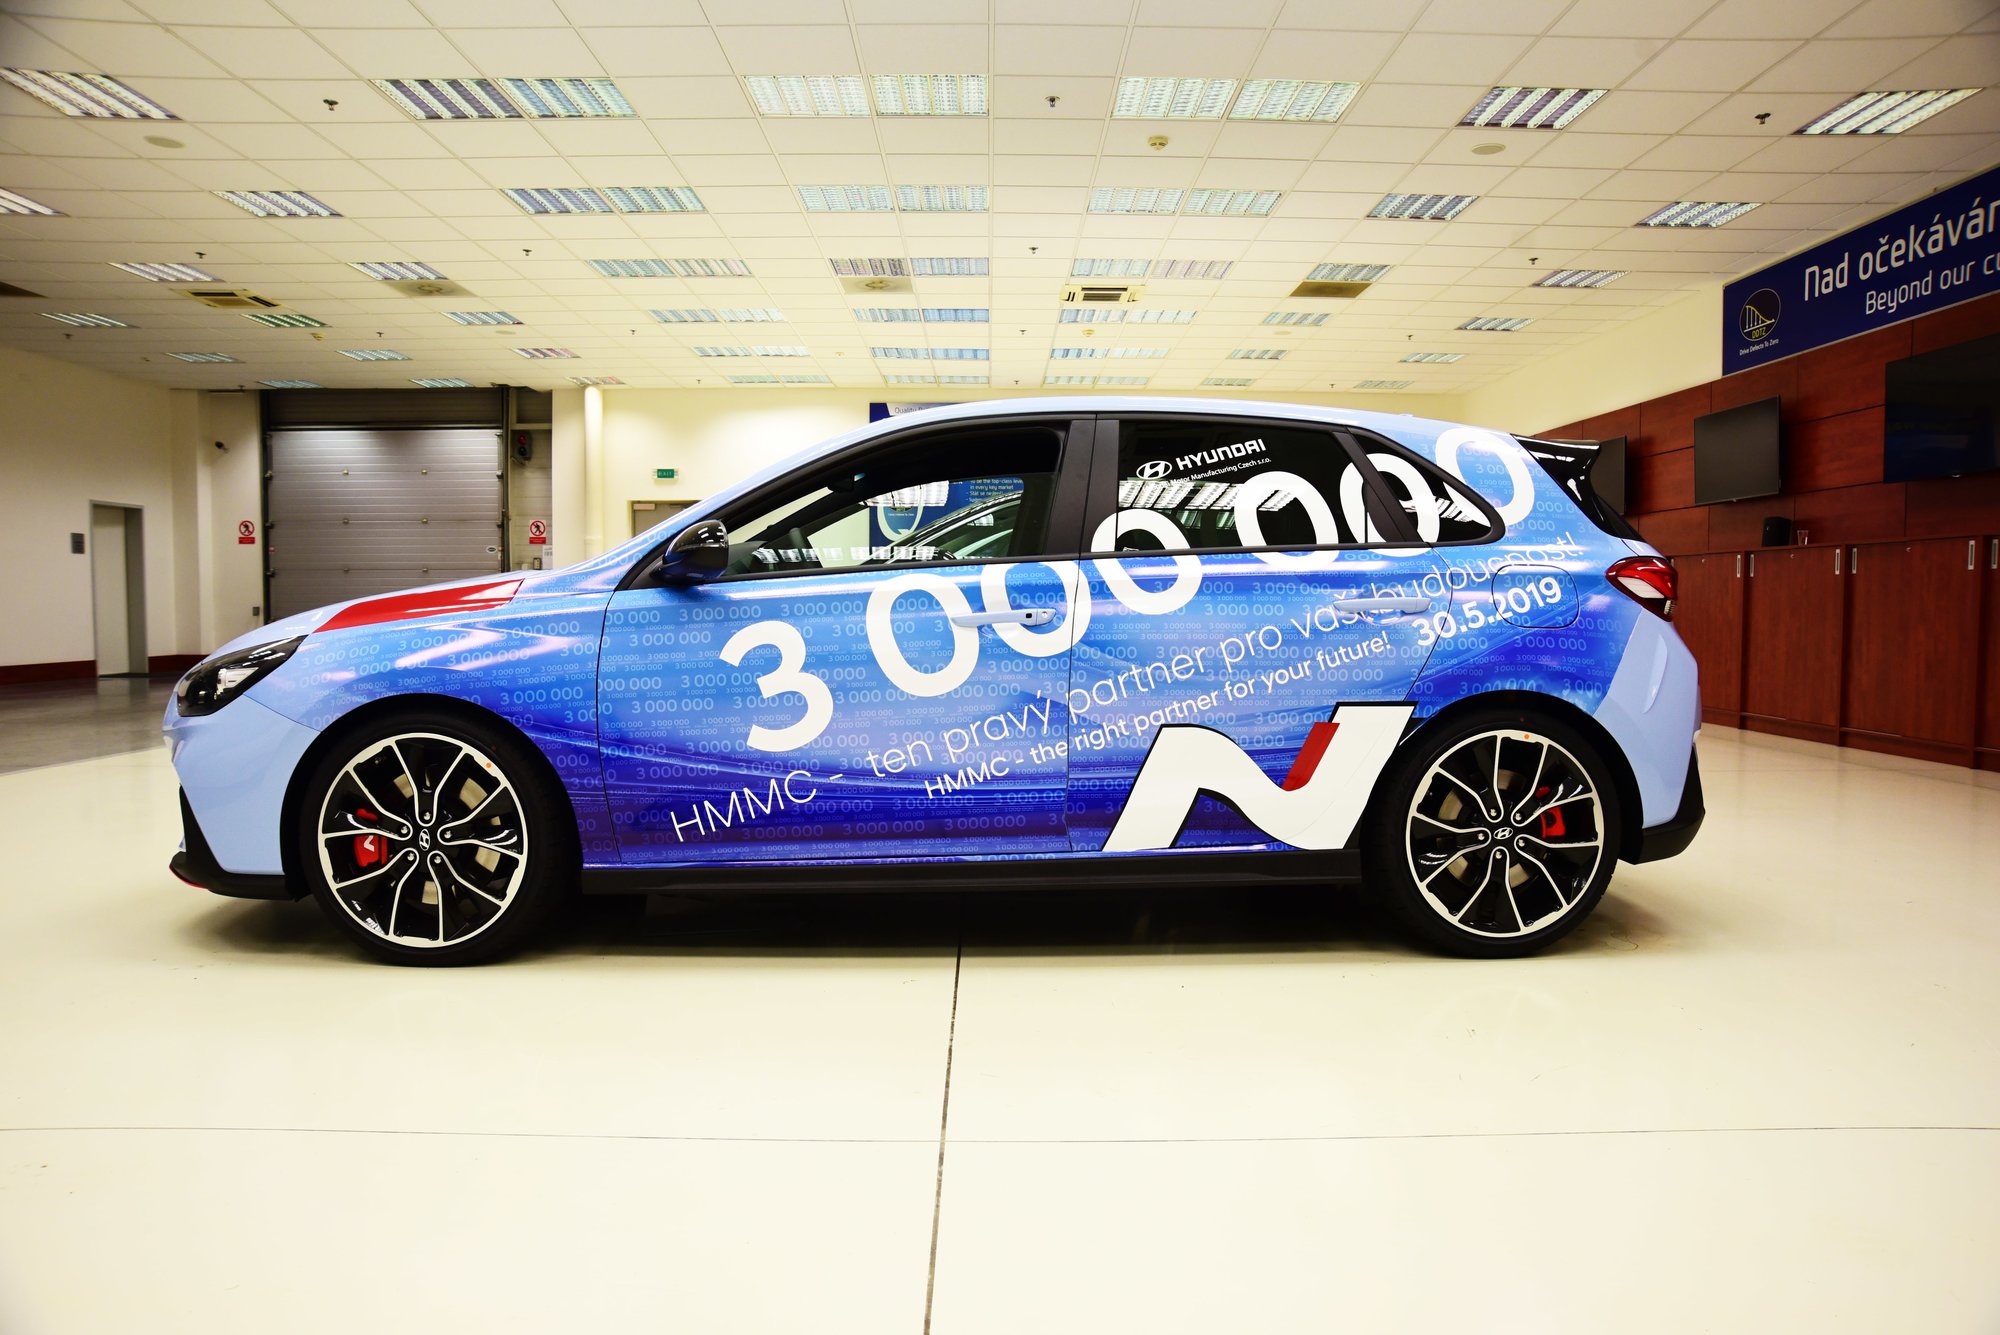 Nošovický závod Hyundai Motor Manufacturing Czech slaví tři miliony vyrobených aut